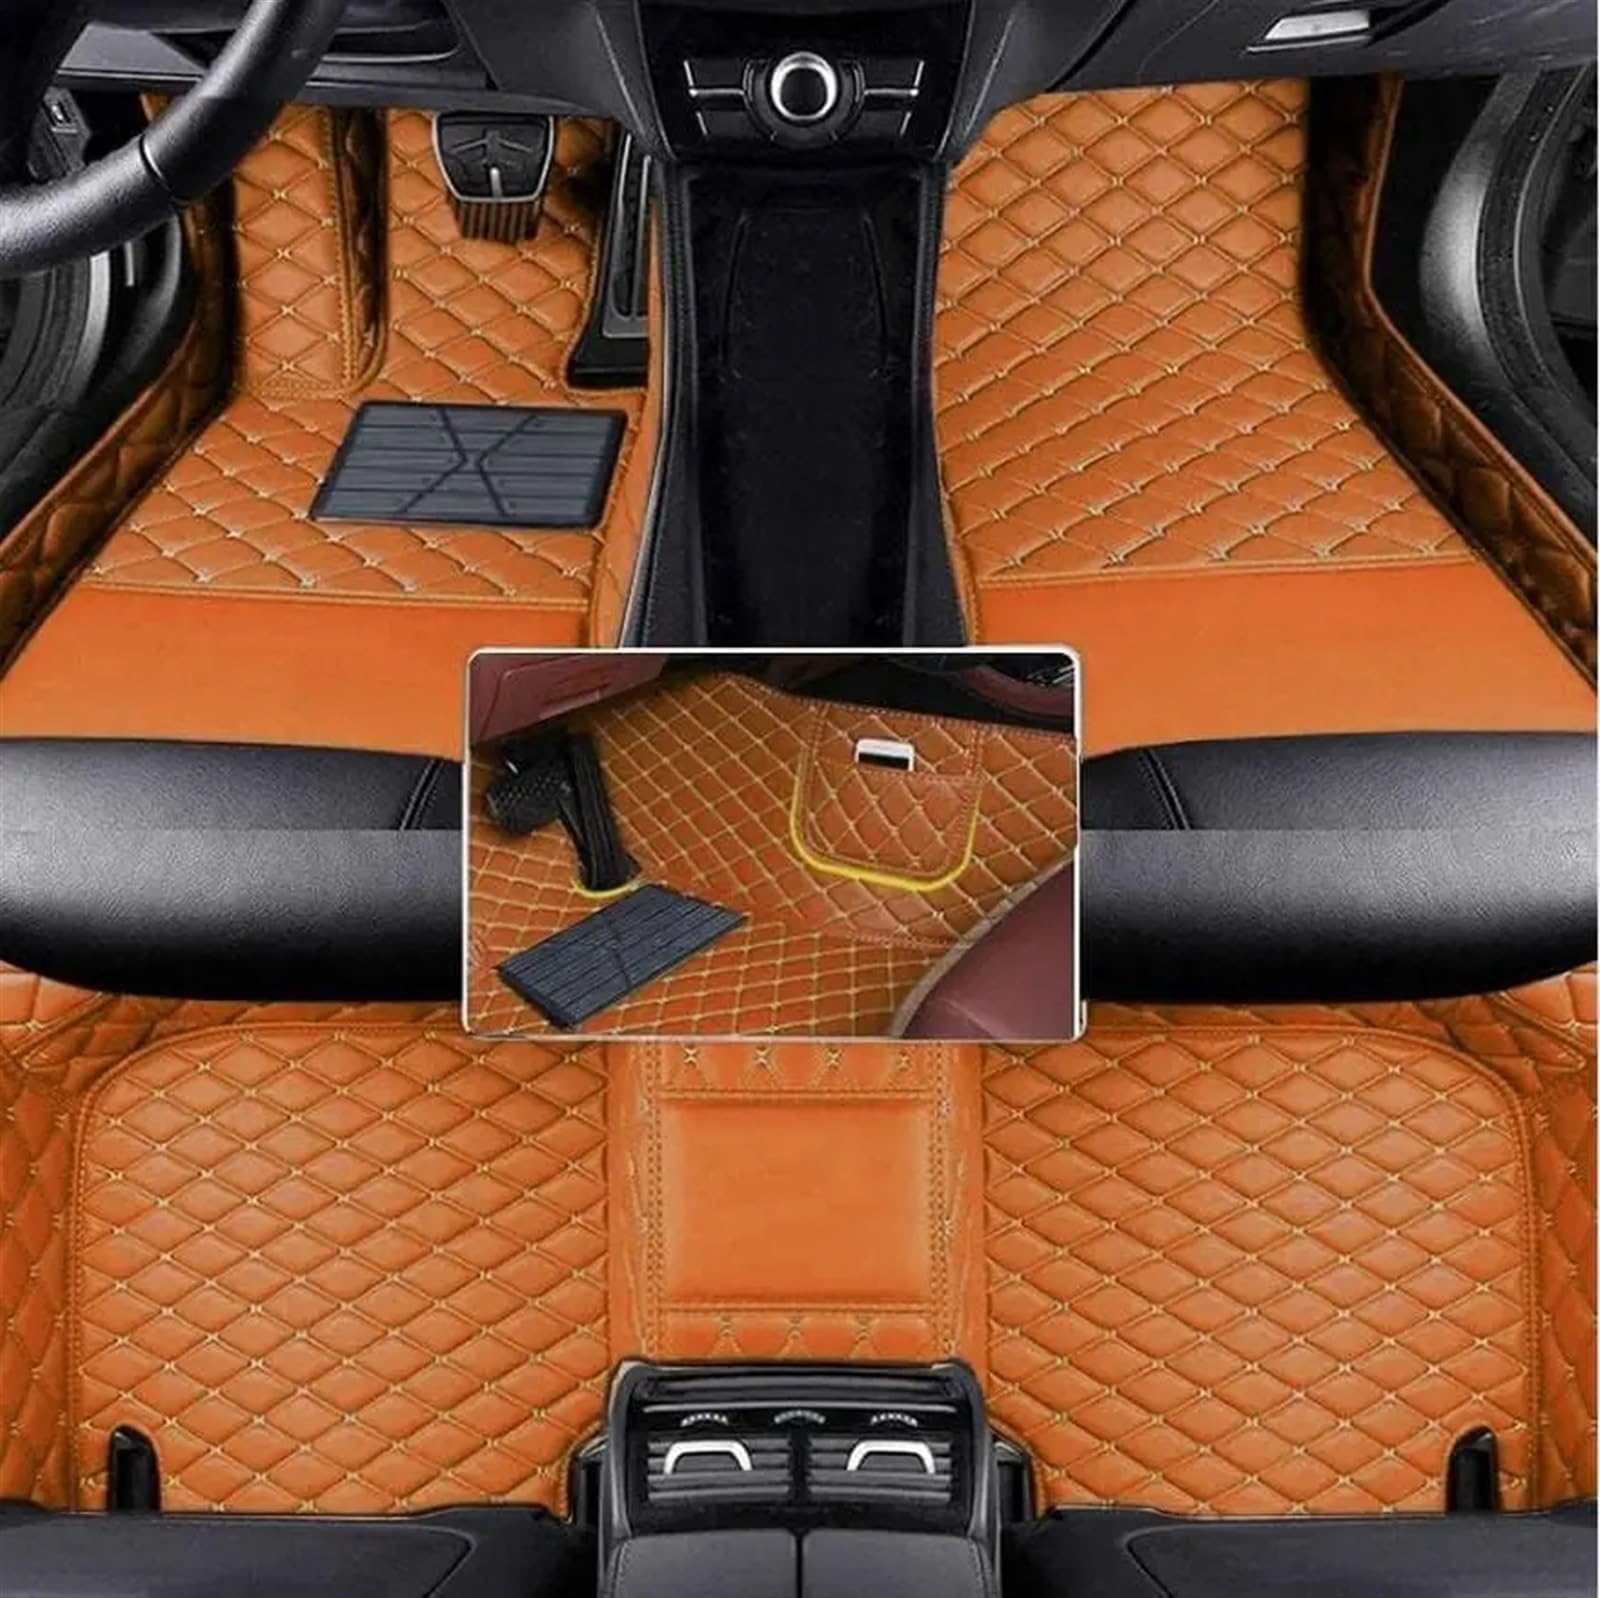 Auto Fußmatten Set Kompatibel Mit Chevrolet Für Tracker 2019 2020 2021 Benutzerdefinierte PU-Auto-Bodenmatte Für Schutz des Fahrzeugteppichs Im Innenraum Fußpolster(Brown) von ZHjLut